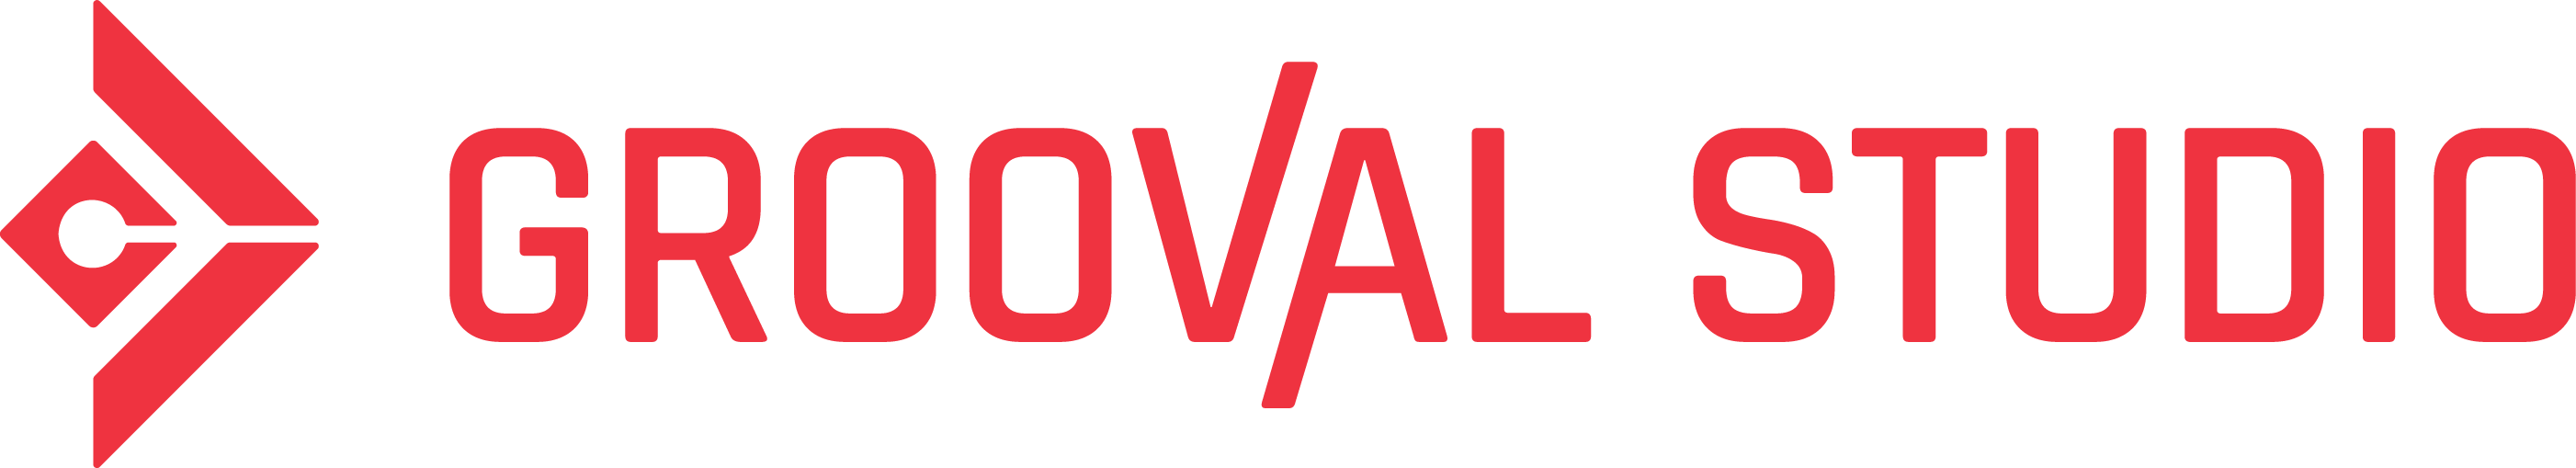 Logo e imagotipo de grooval studio versión del logotipo horizontal.